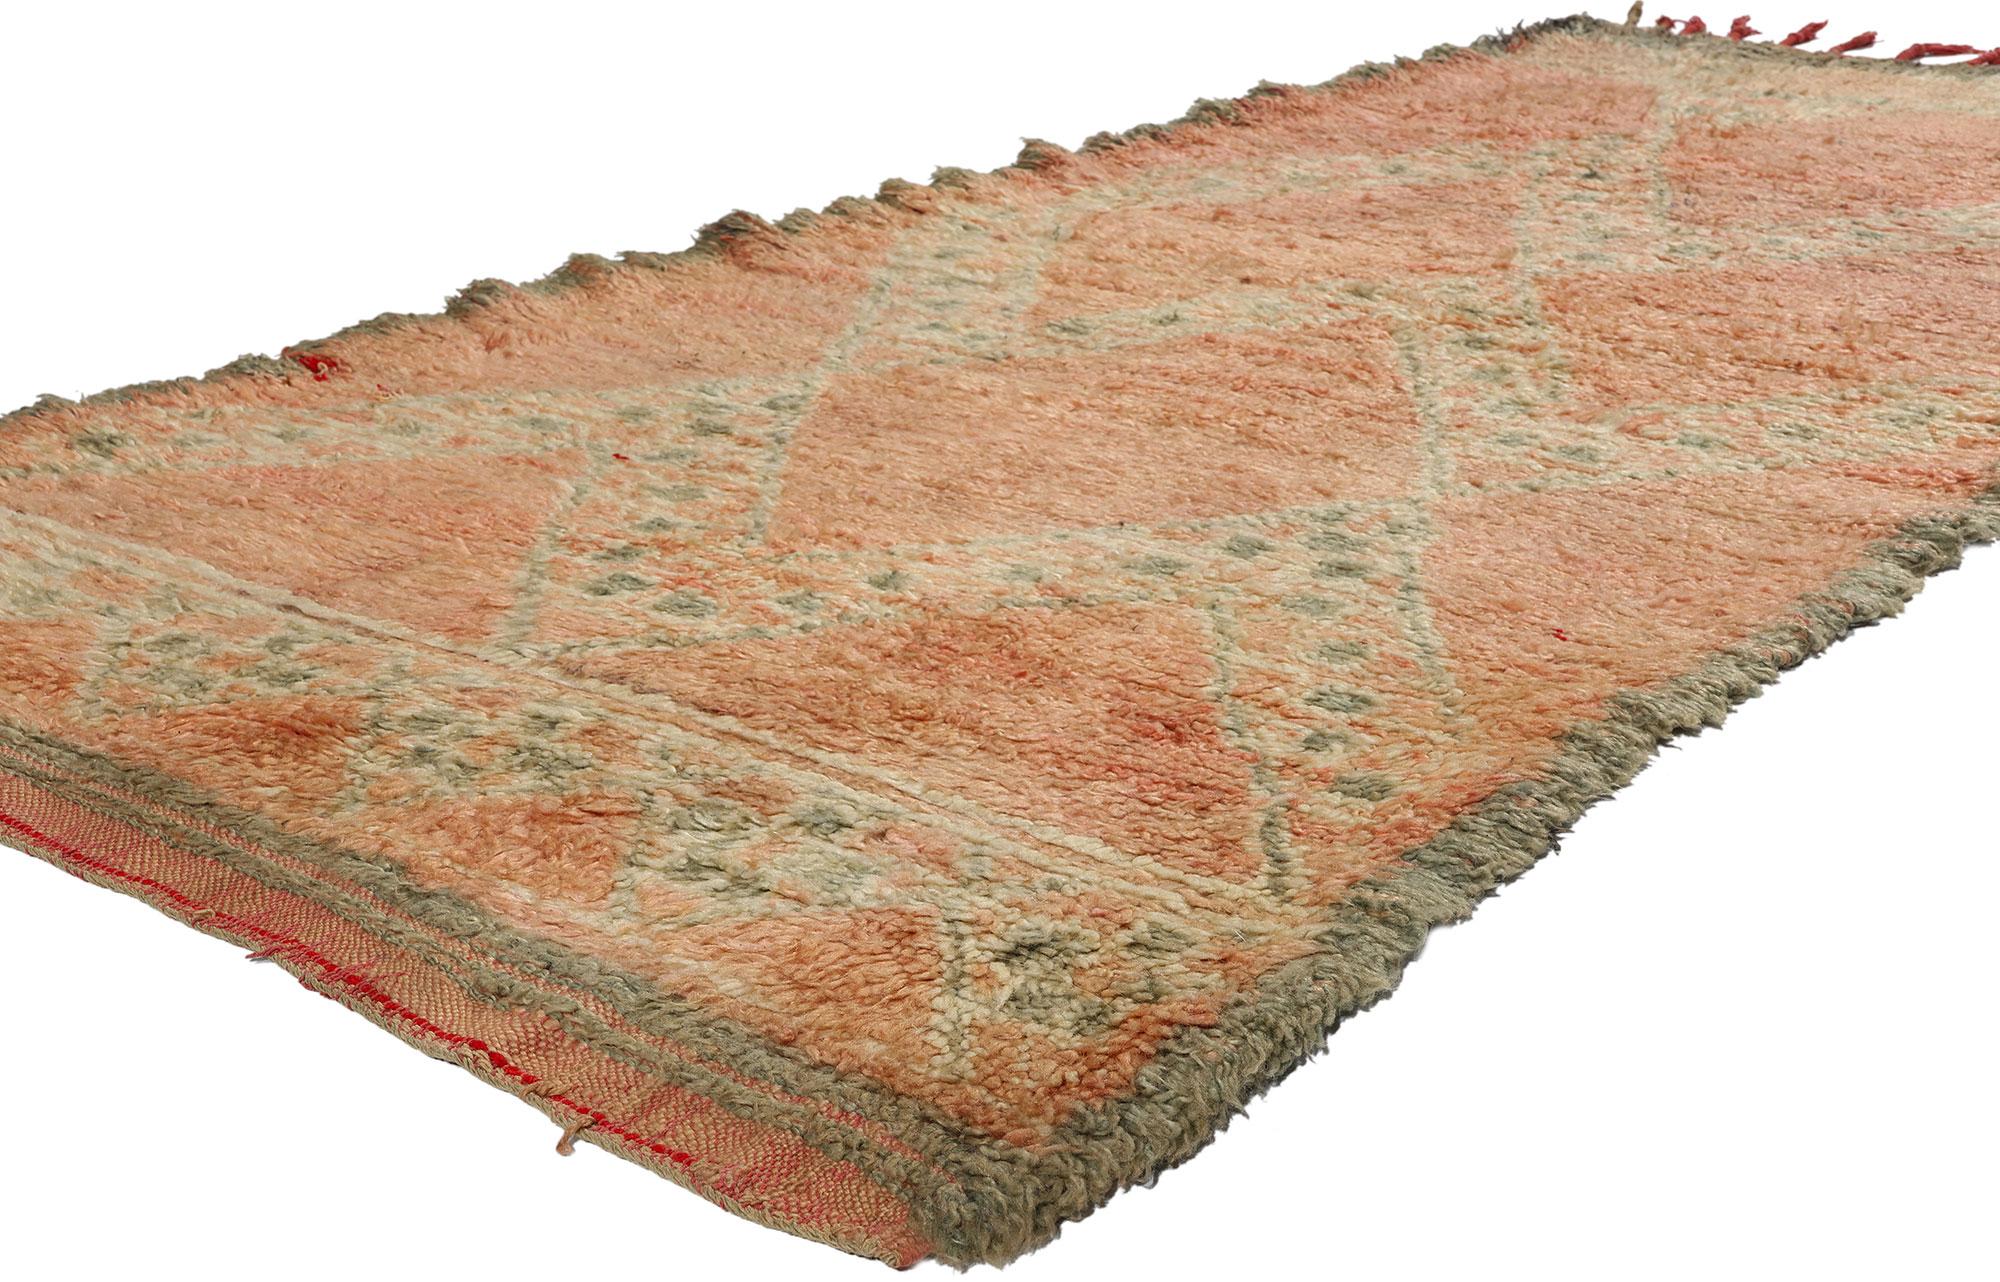 21838 Vintage Pink Boujad Marokkanischer Teppich, 03'09 x 07'11. Der Boujad-Teppich stammt aus der Region Boujad im Mittleren Atlasgebirge in Marokko und ist ein Zeugnis für exquisite Handwerkskunst und kulturelles Erbe. Diese Teppiche werden von